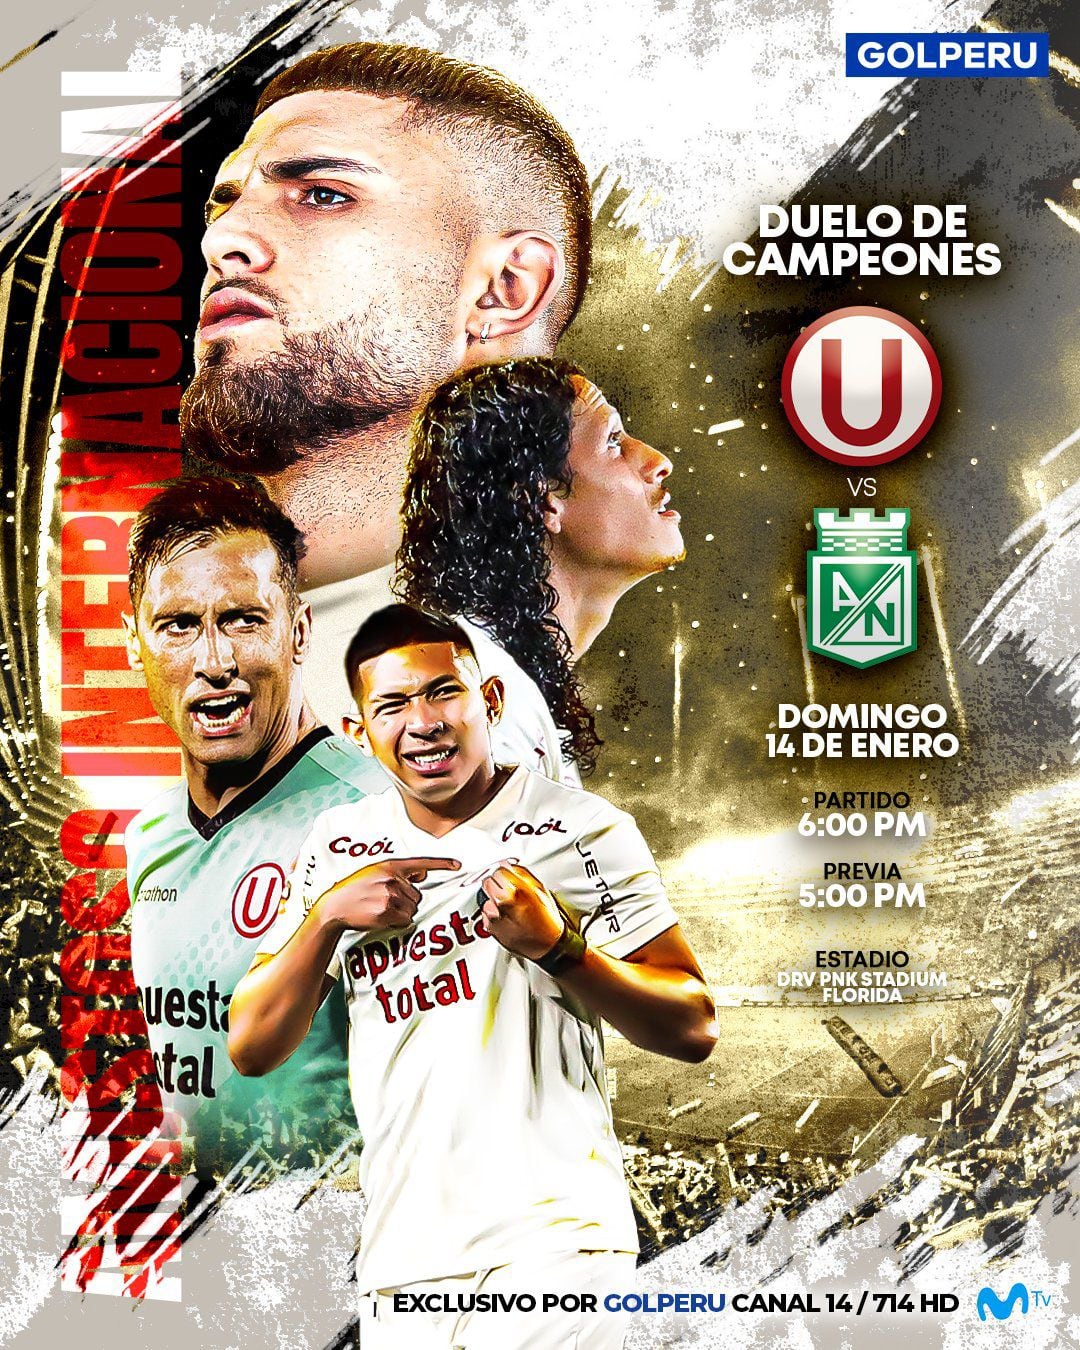 GOLPERU se encargará de transmitir el "Duelo de Campeones" entre Universitario y Atlético Nacional de Colombia.